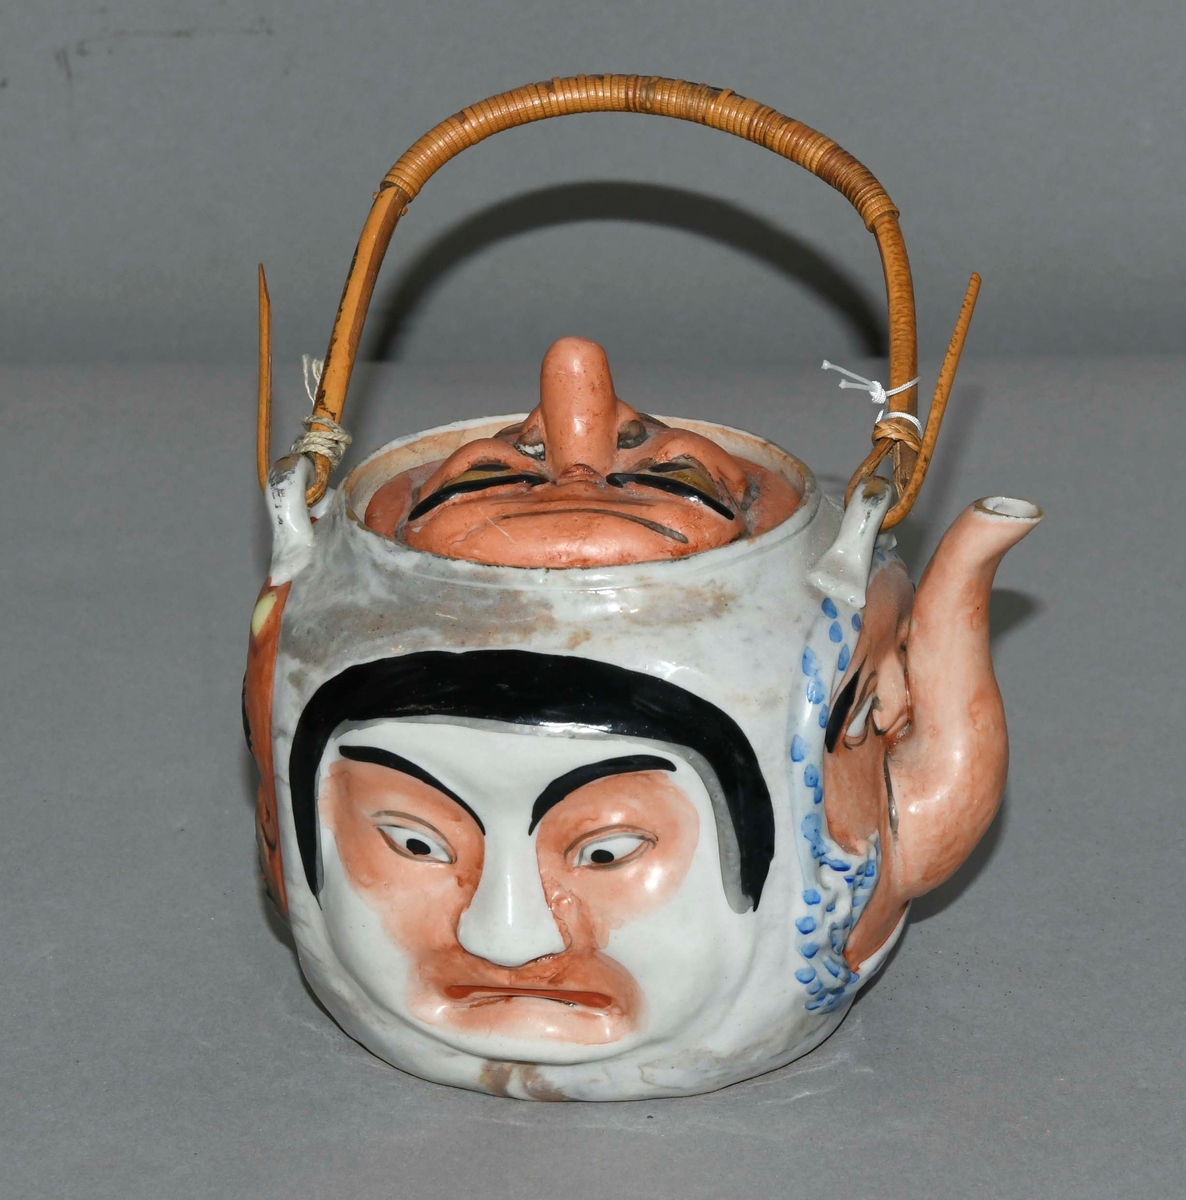 Rund kanne av keramikk med asiatisk dekor. Fire ansikter på korpus av kannen, lokket er også formet som ansikt. Tvinnet pinne fungerer som hengslet håndtak.